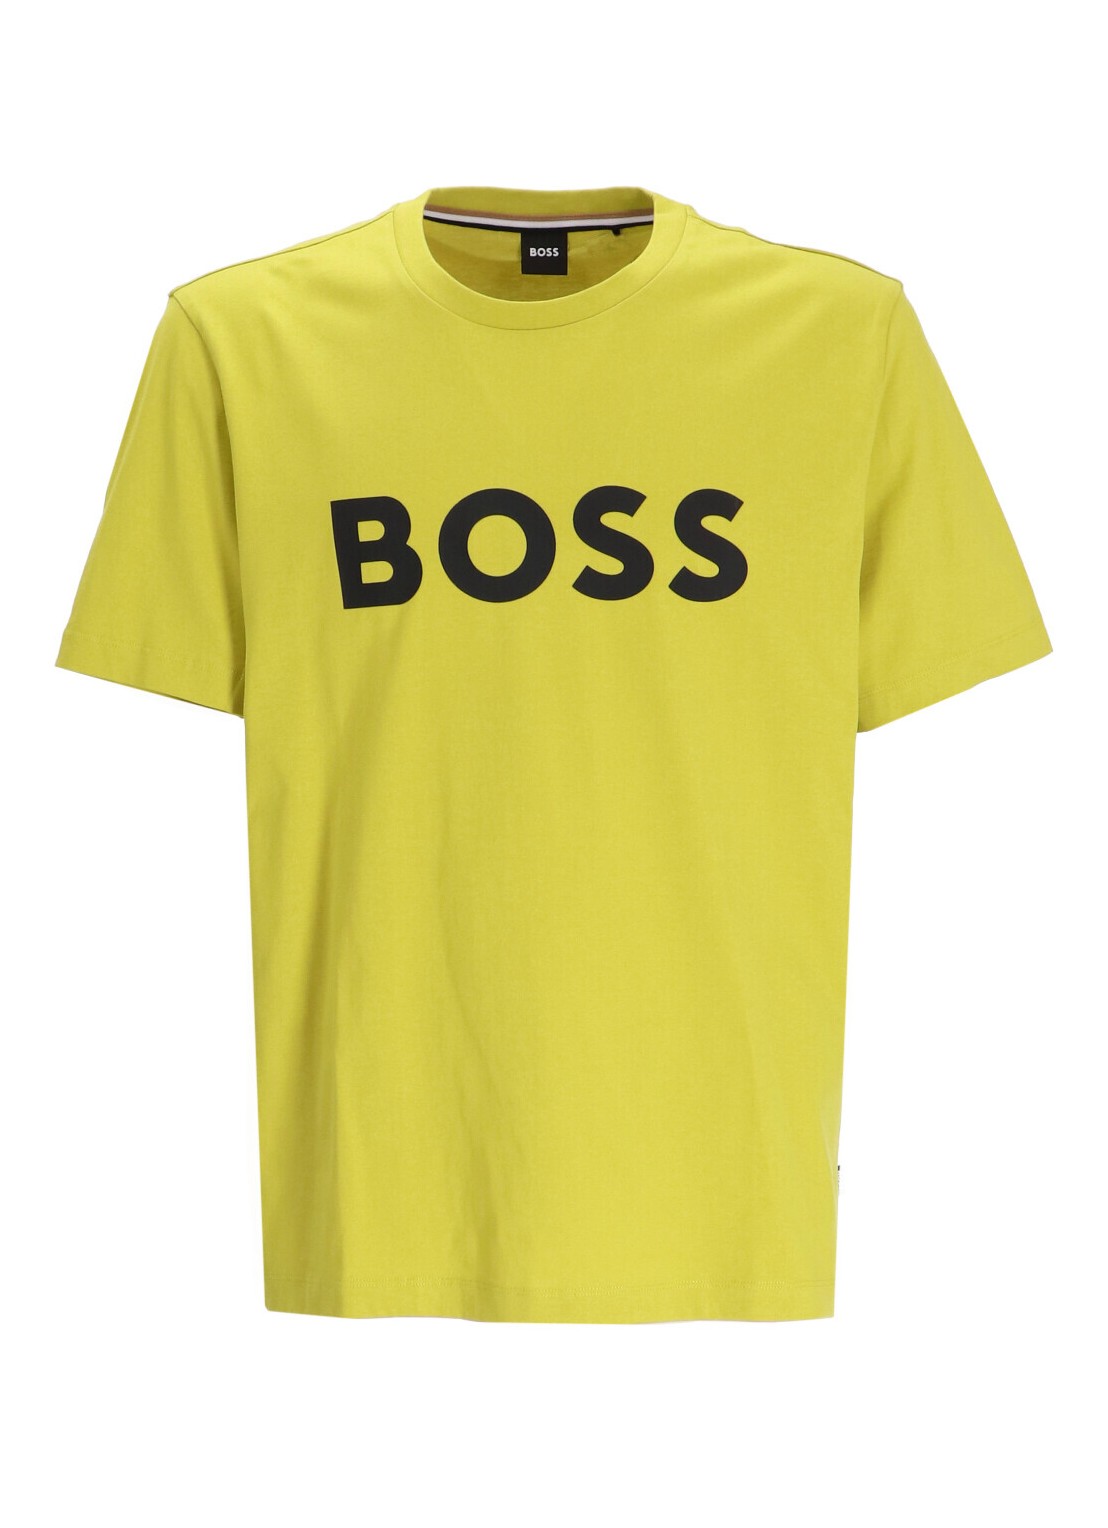 Camiseta boss t-shirt man tiburt 354 50495742 321 talla L
 